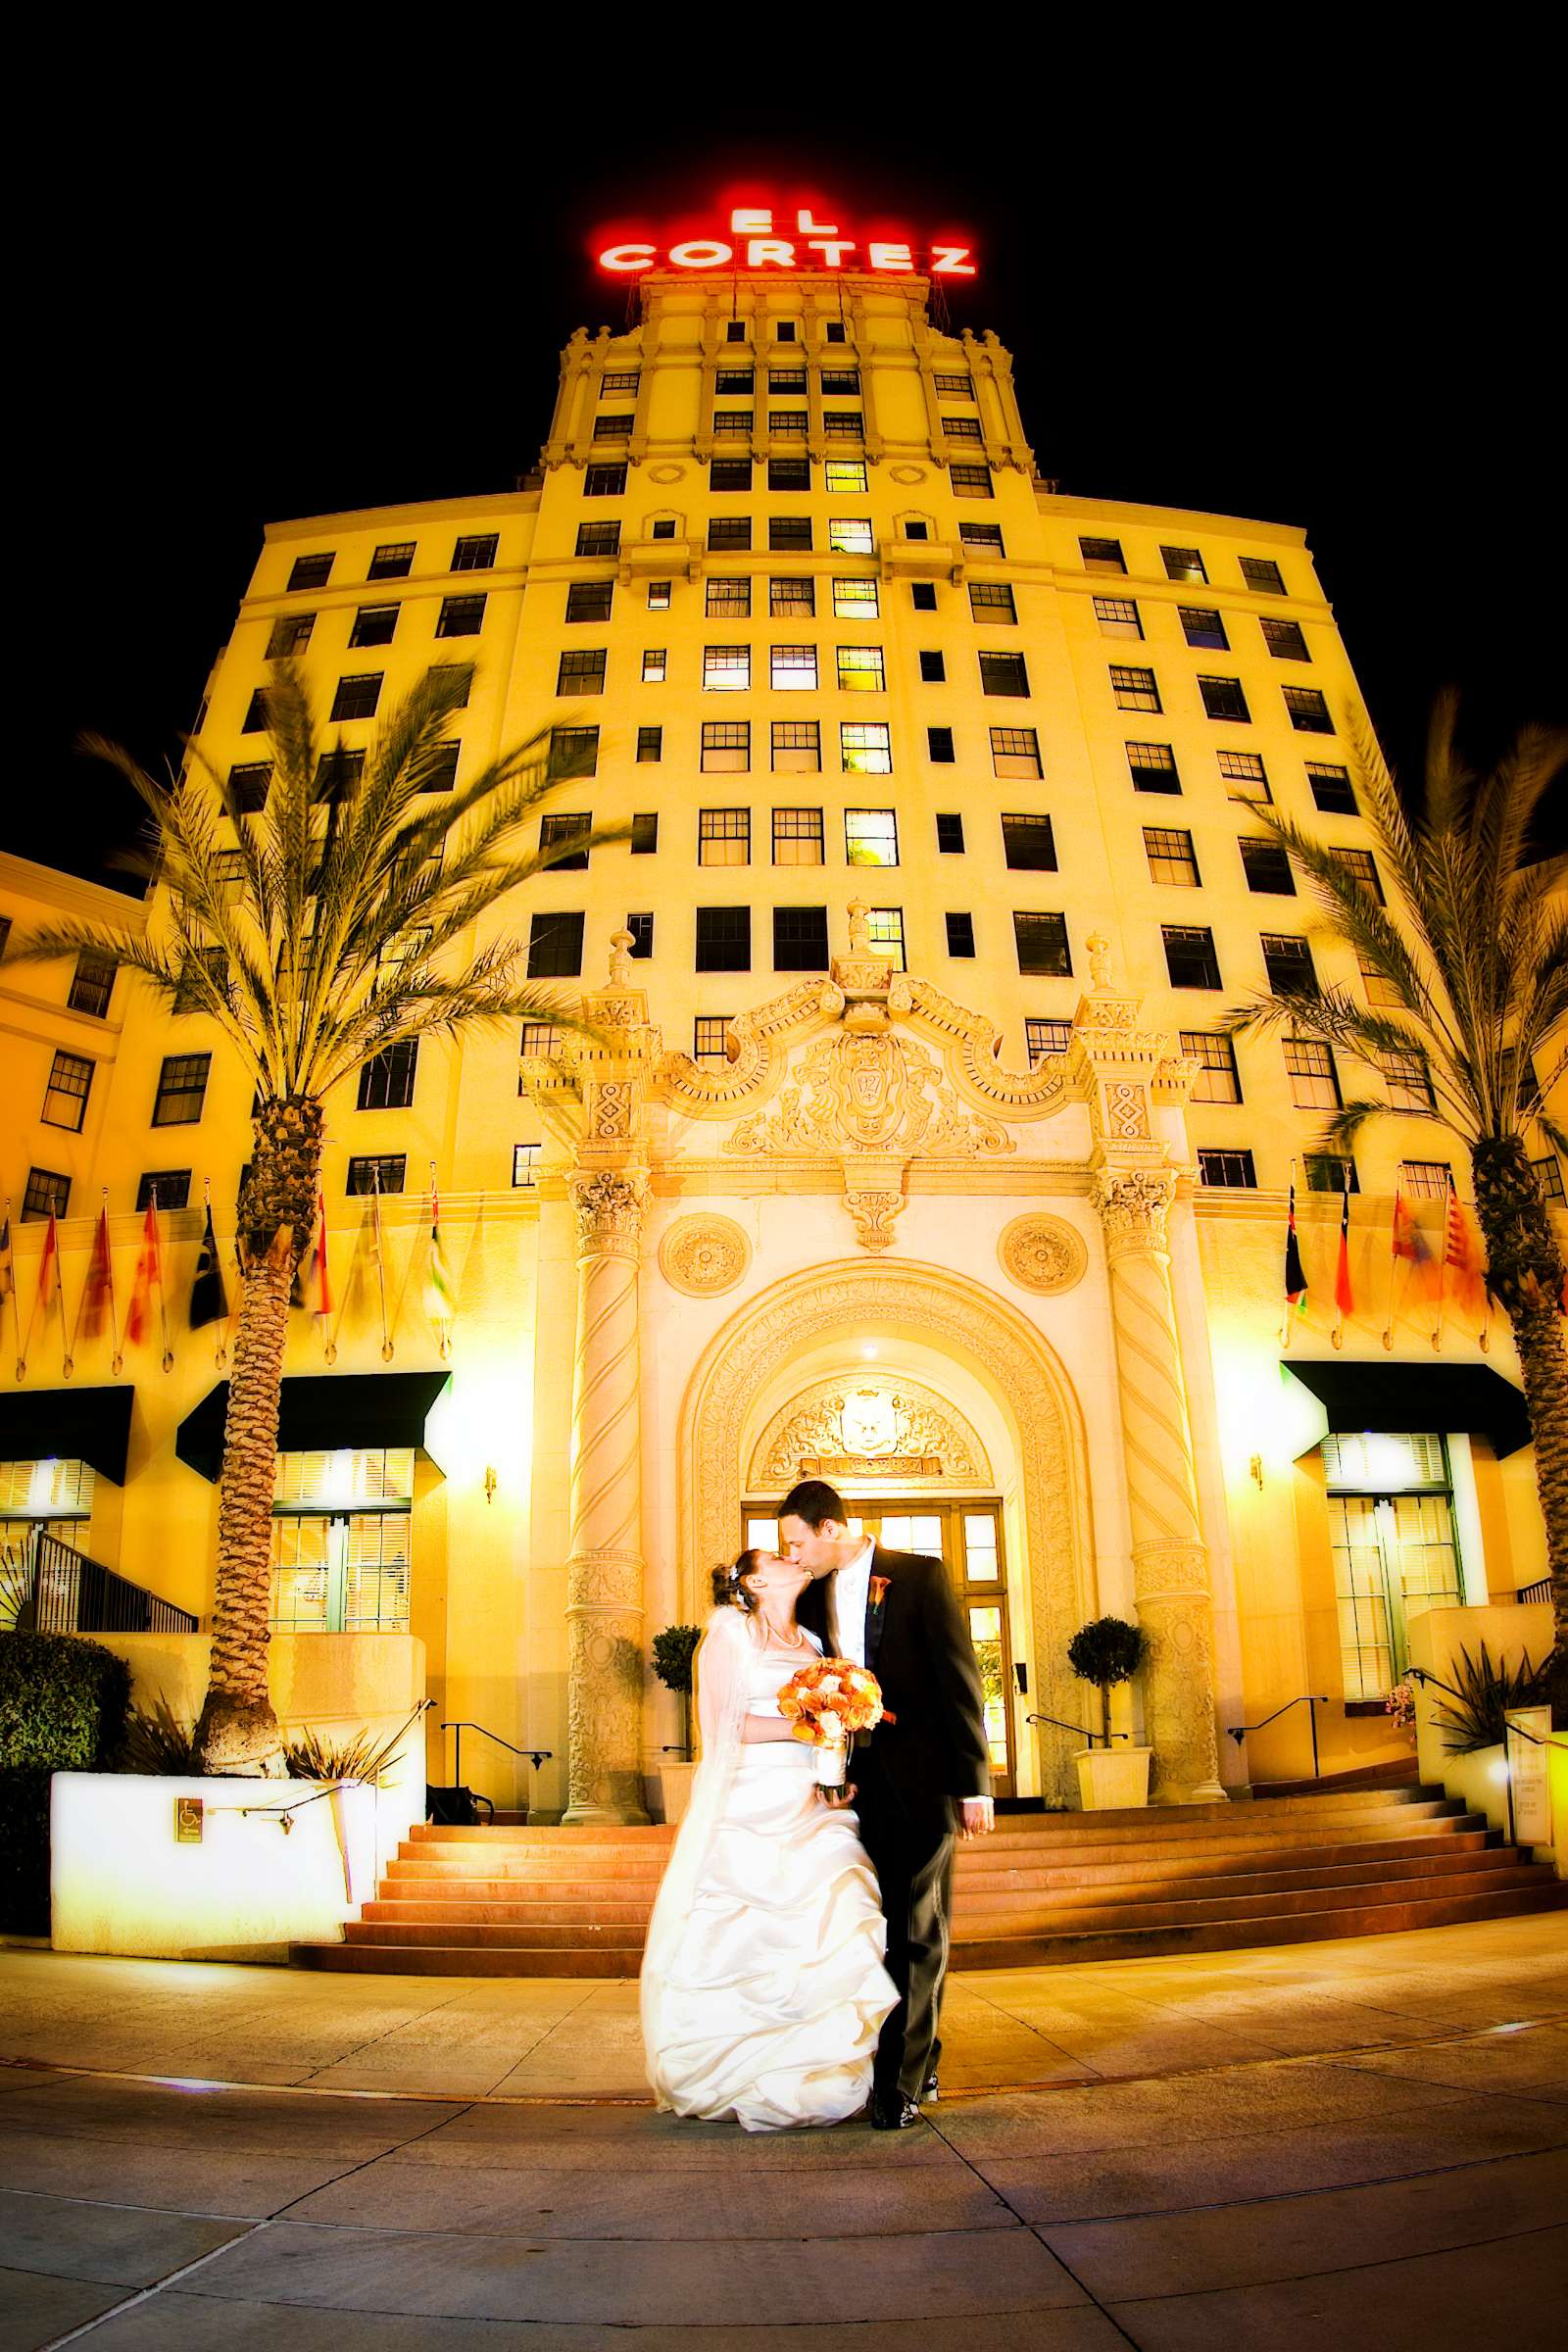 El Cortez Wedding, Laura and David Wedding Photo #1 by True Photography